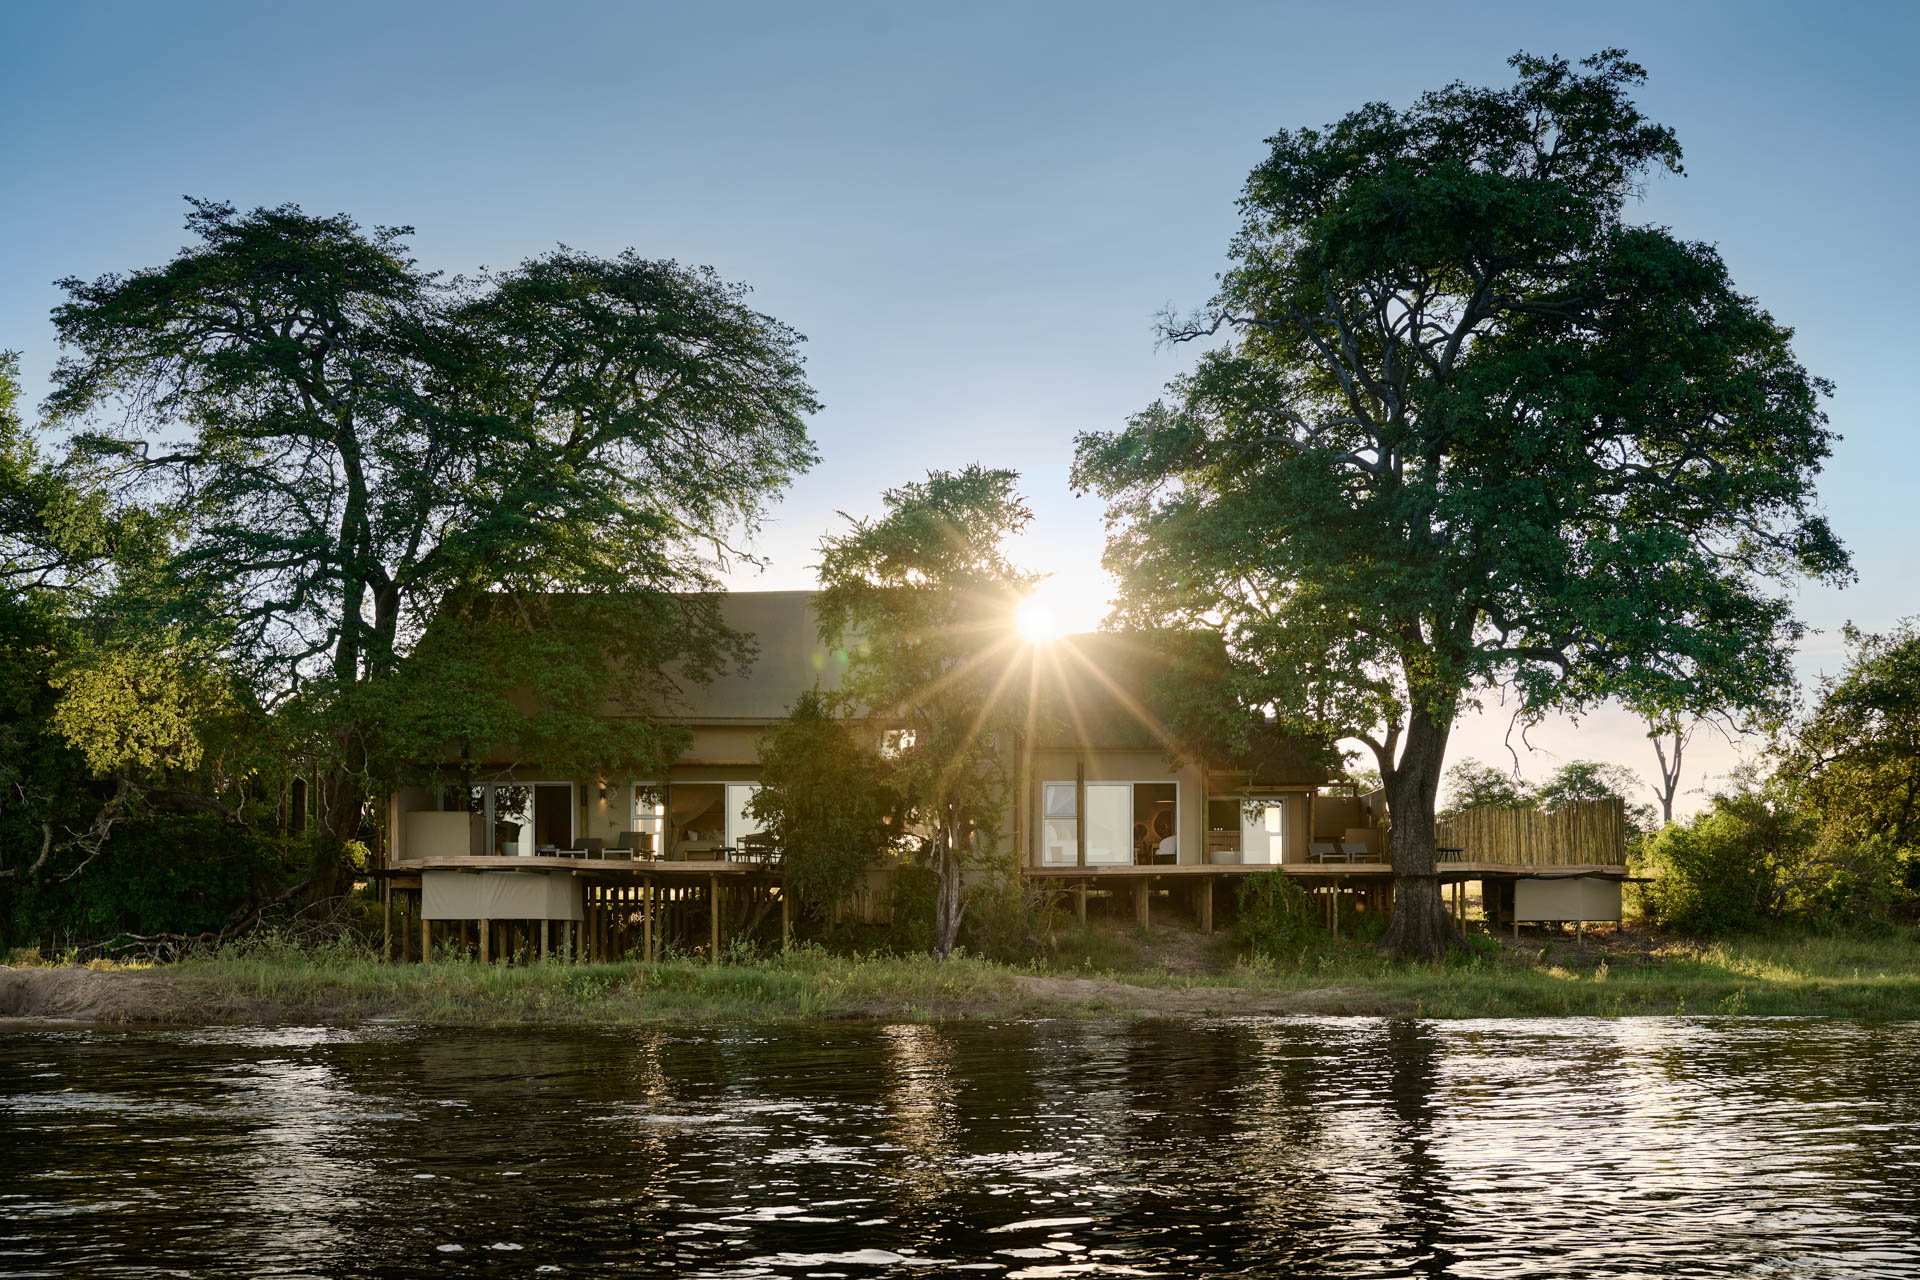 VFRL Hippo Creek Villa brand shoot. Zambezi National Park, Victoria Falls, Zimbabwe. Client: Zambezi Crescent. Stylist: Jena Gradwell. Photographer: Mark Williams.